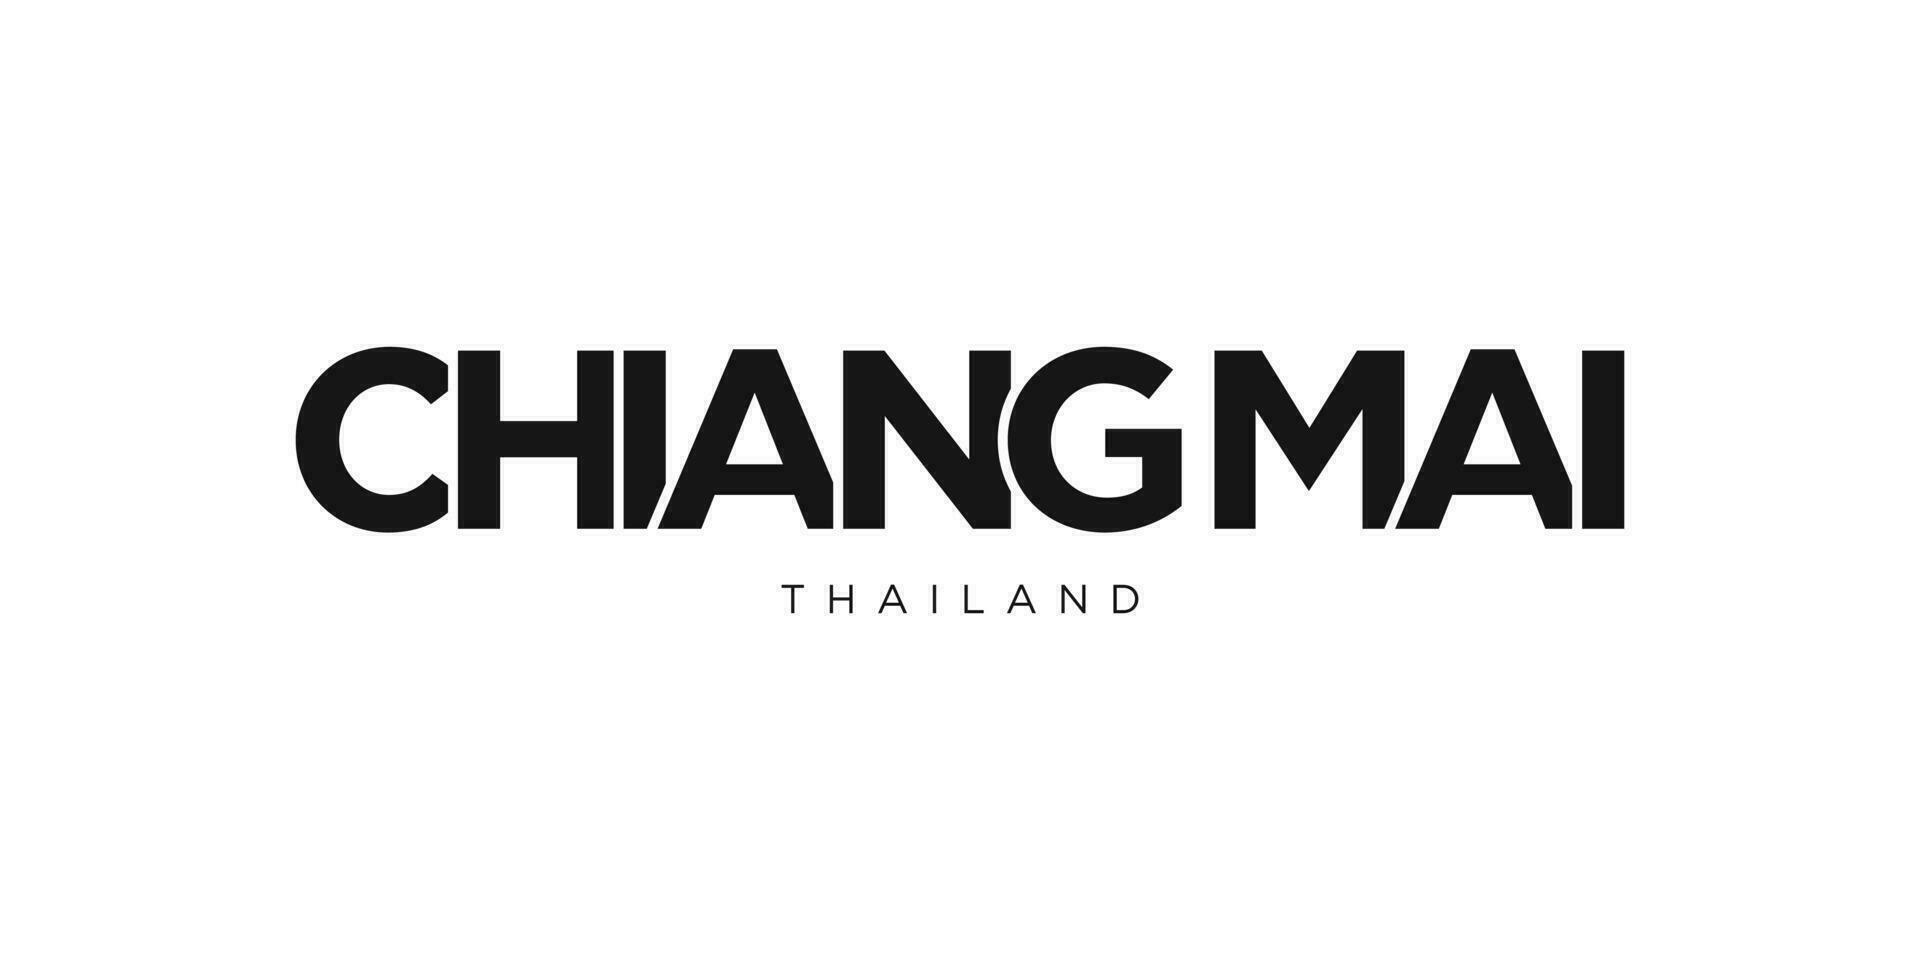 Chiang mai dentro a Tailândia emblema. a Projeto características uma geométrico estilo, vetor ilustração com negrito tipografia dentro uma moderno Fonte. a gráfico slogan rotulação.